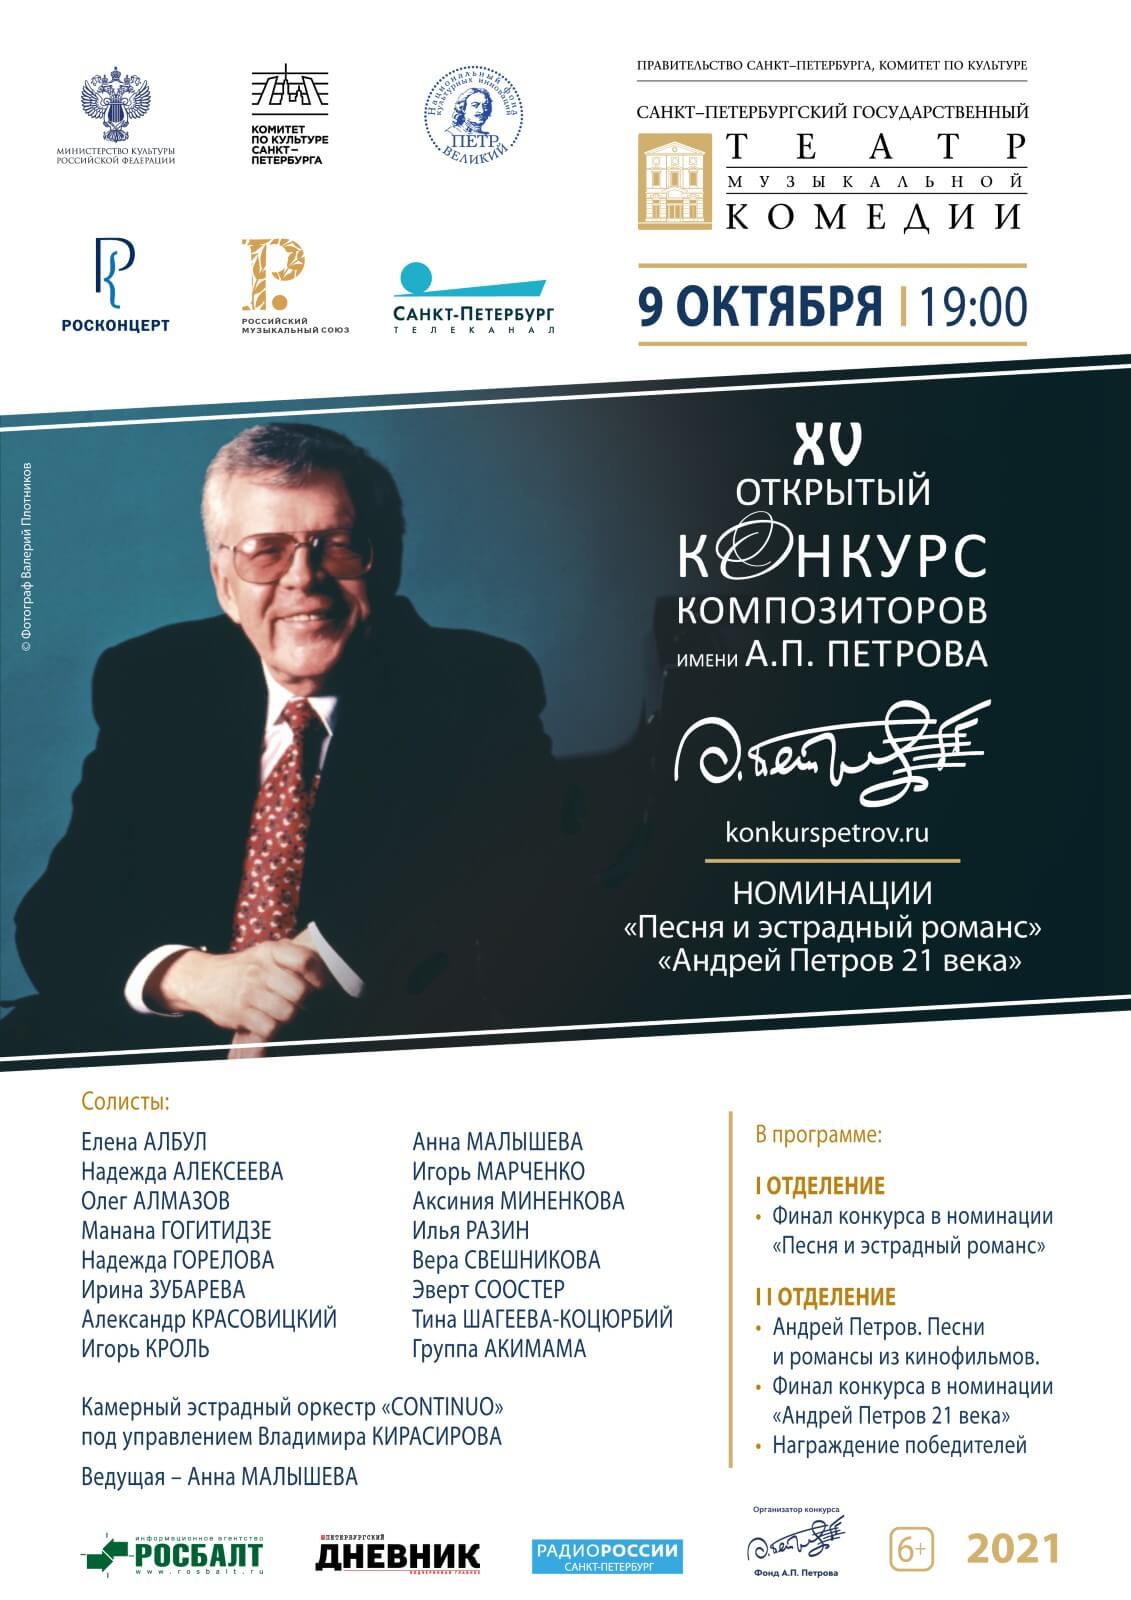 При поддержке Российского музыкального союза проходит XV Открытый конкурс композиторов имени А.П. Петрова